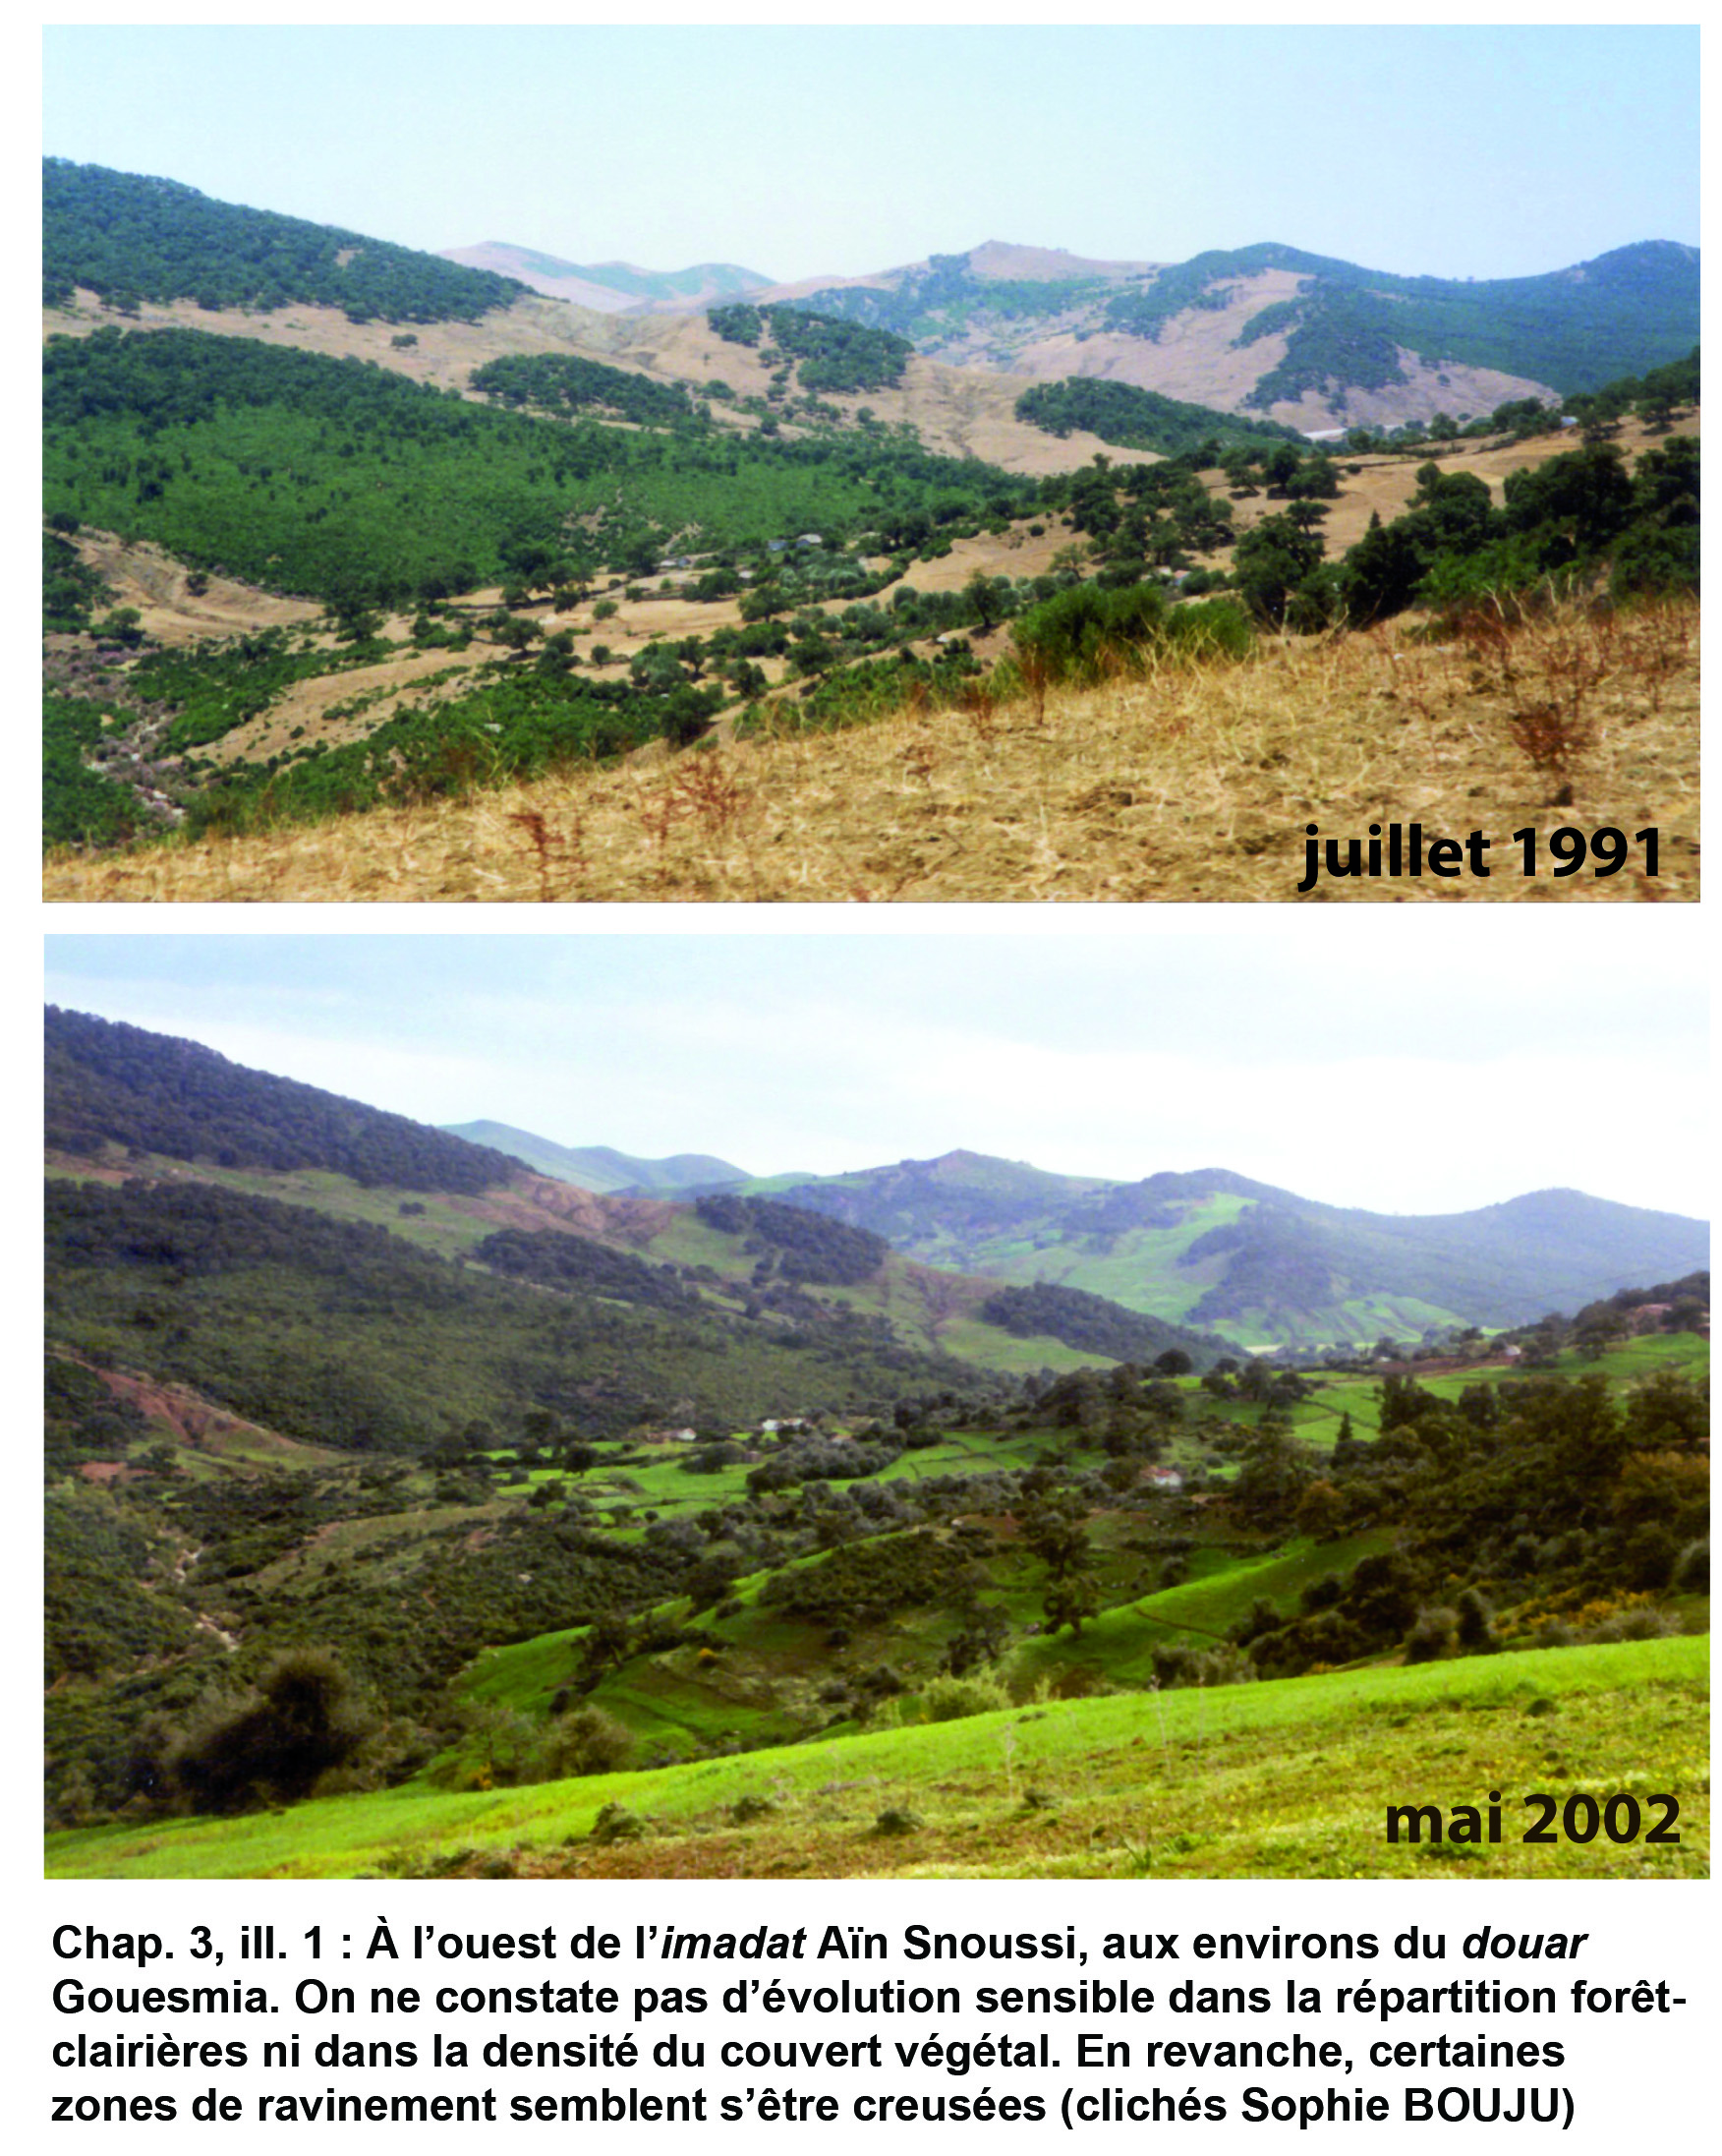 Illustration 1 : Évolution des paysages de 1991 à 2002 (imadat Aïn Snoussi)